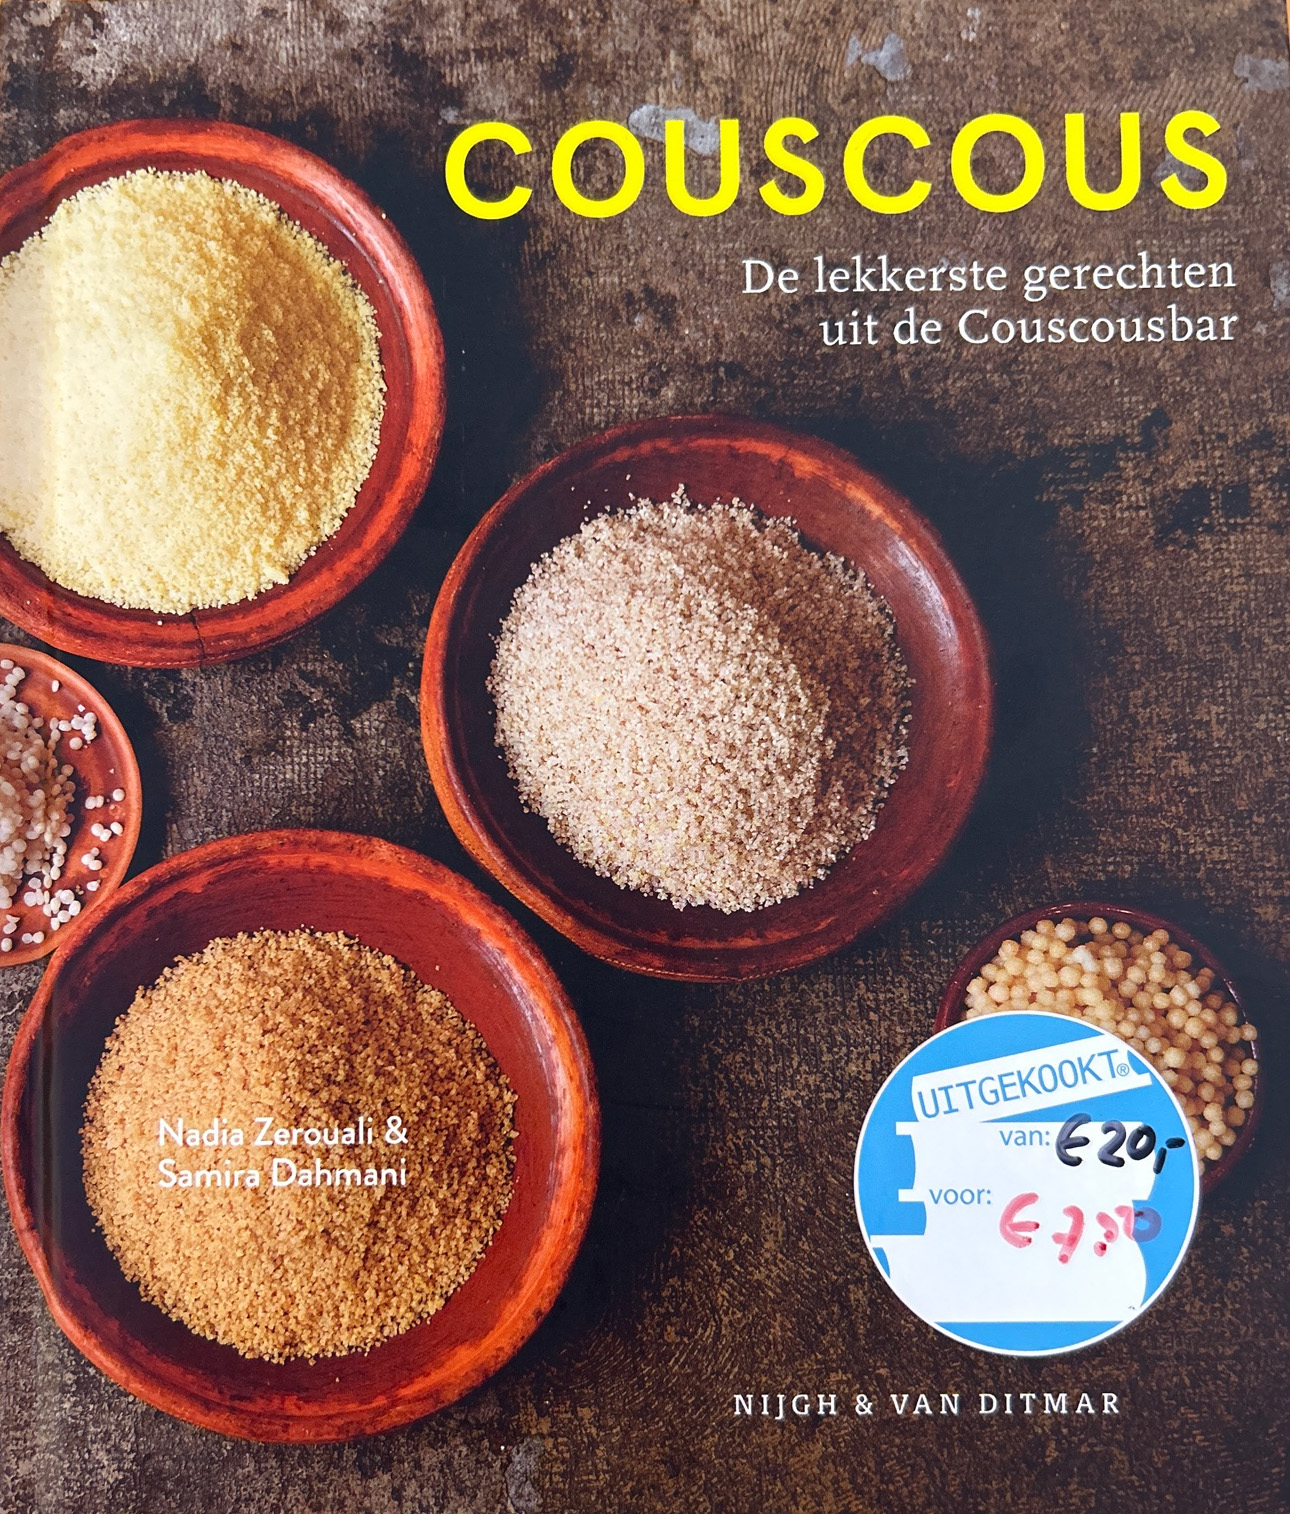 Couscous – Nadia Zerouali